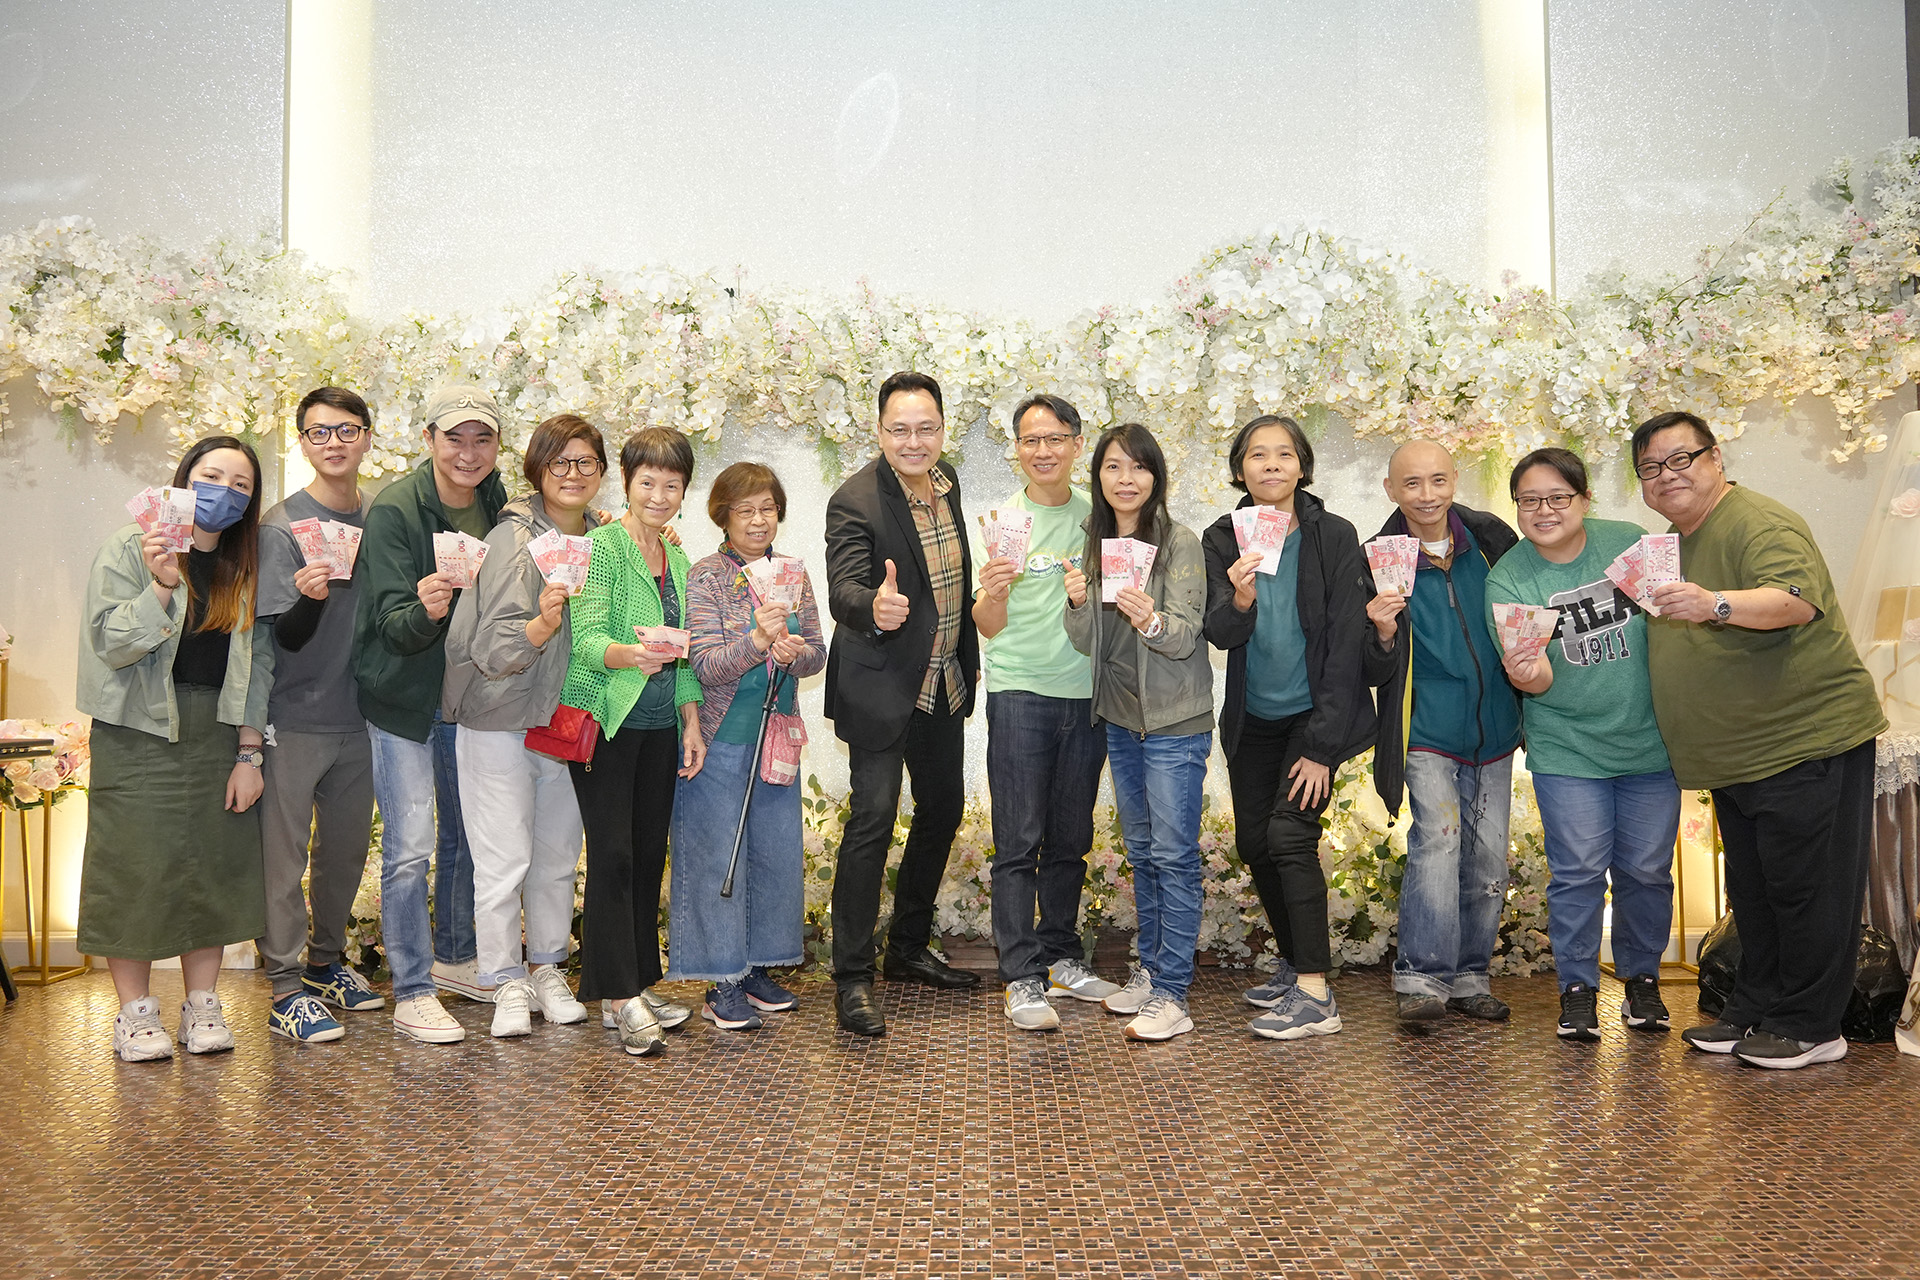 亞軍組合綠組 - 每位組員贏得HK$300